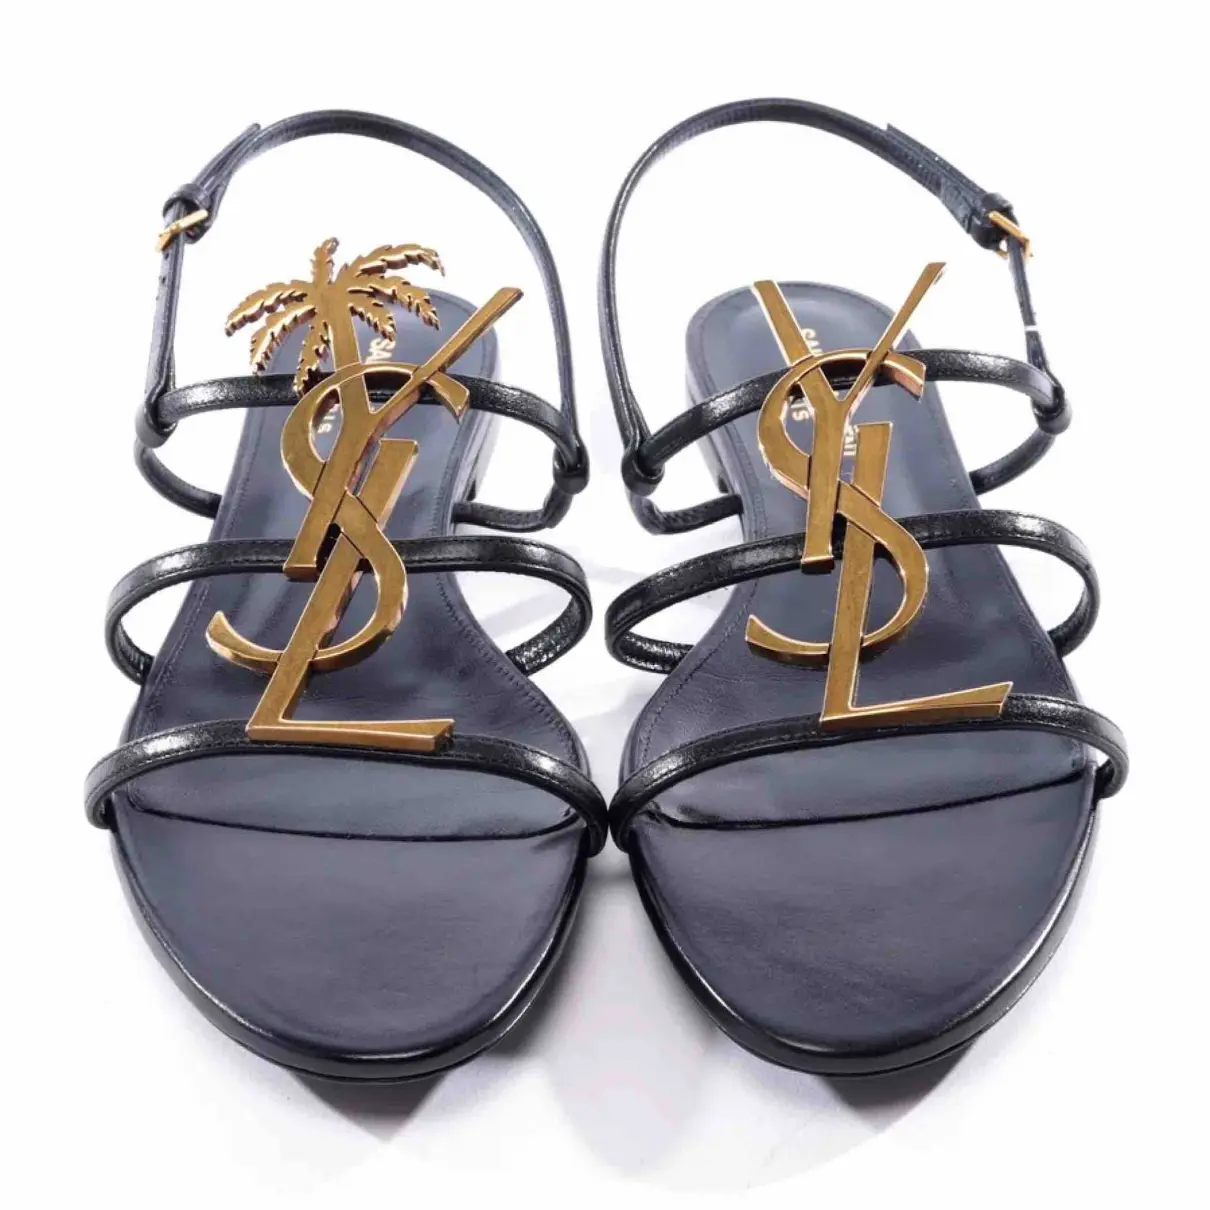 Buy Saint Laurent Cassandra leather sandals online